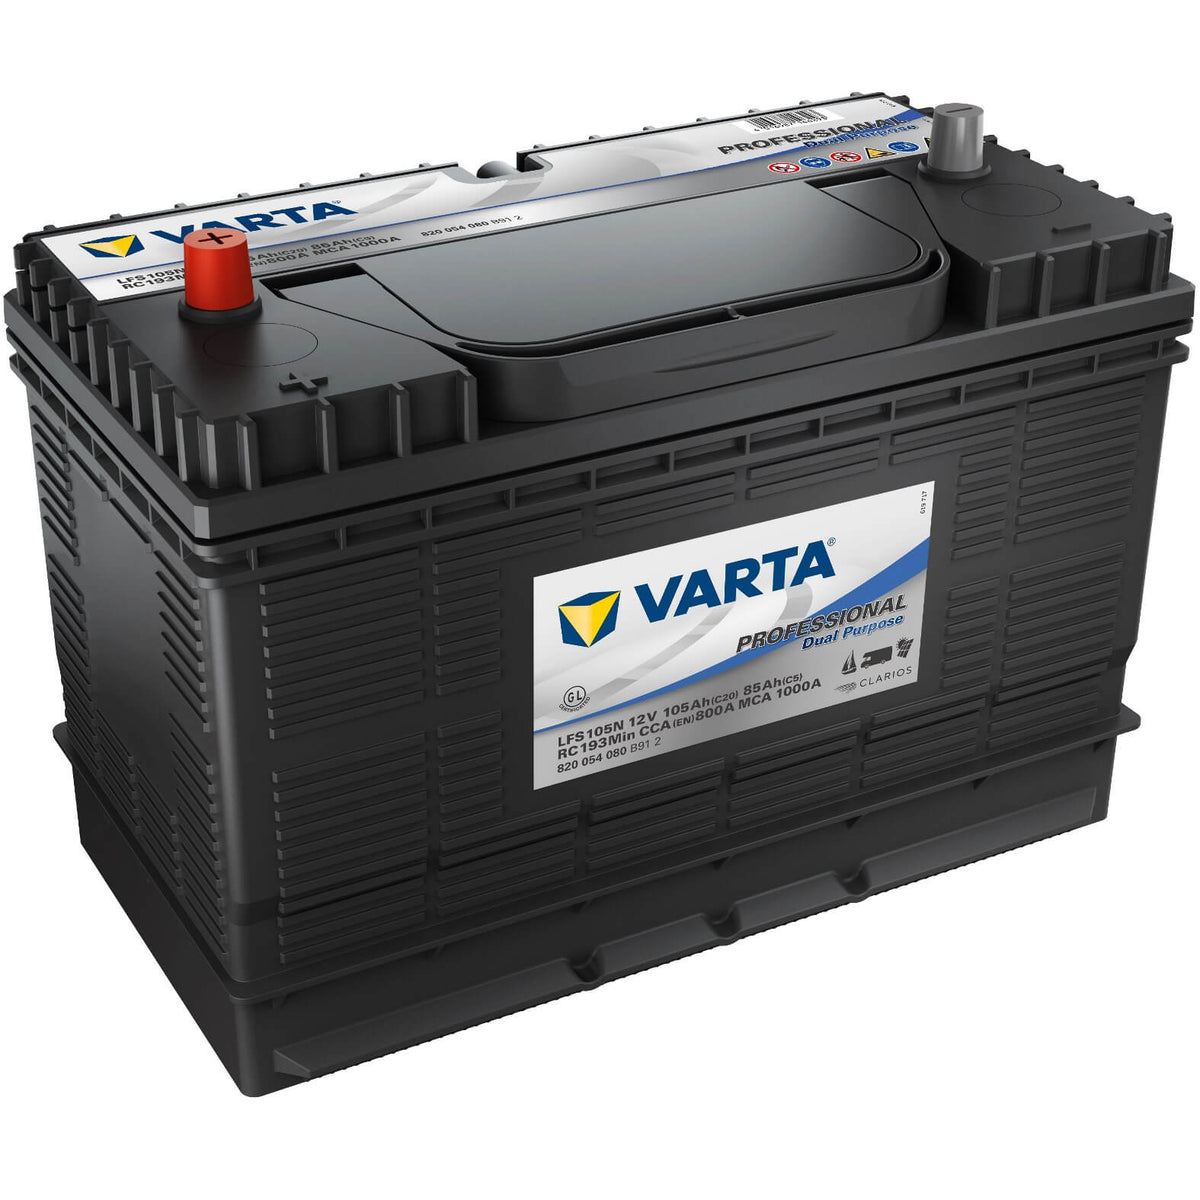 Varta LFS105N Professional Starter 12V 105Ah 800A/EN